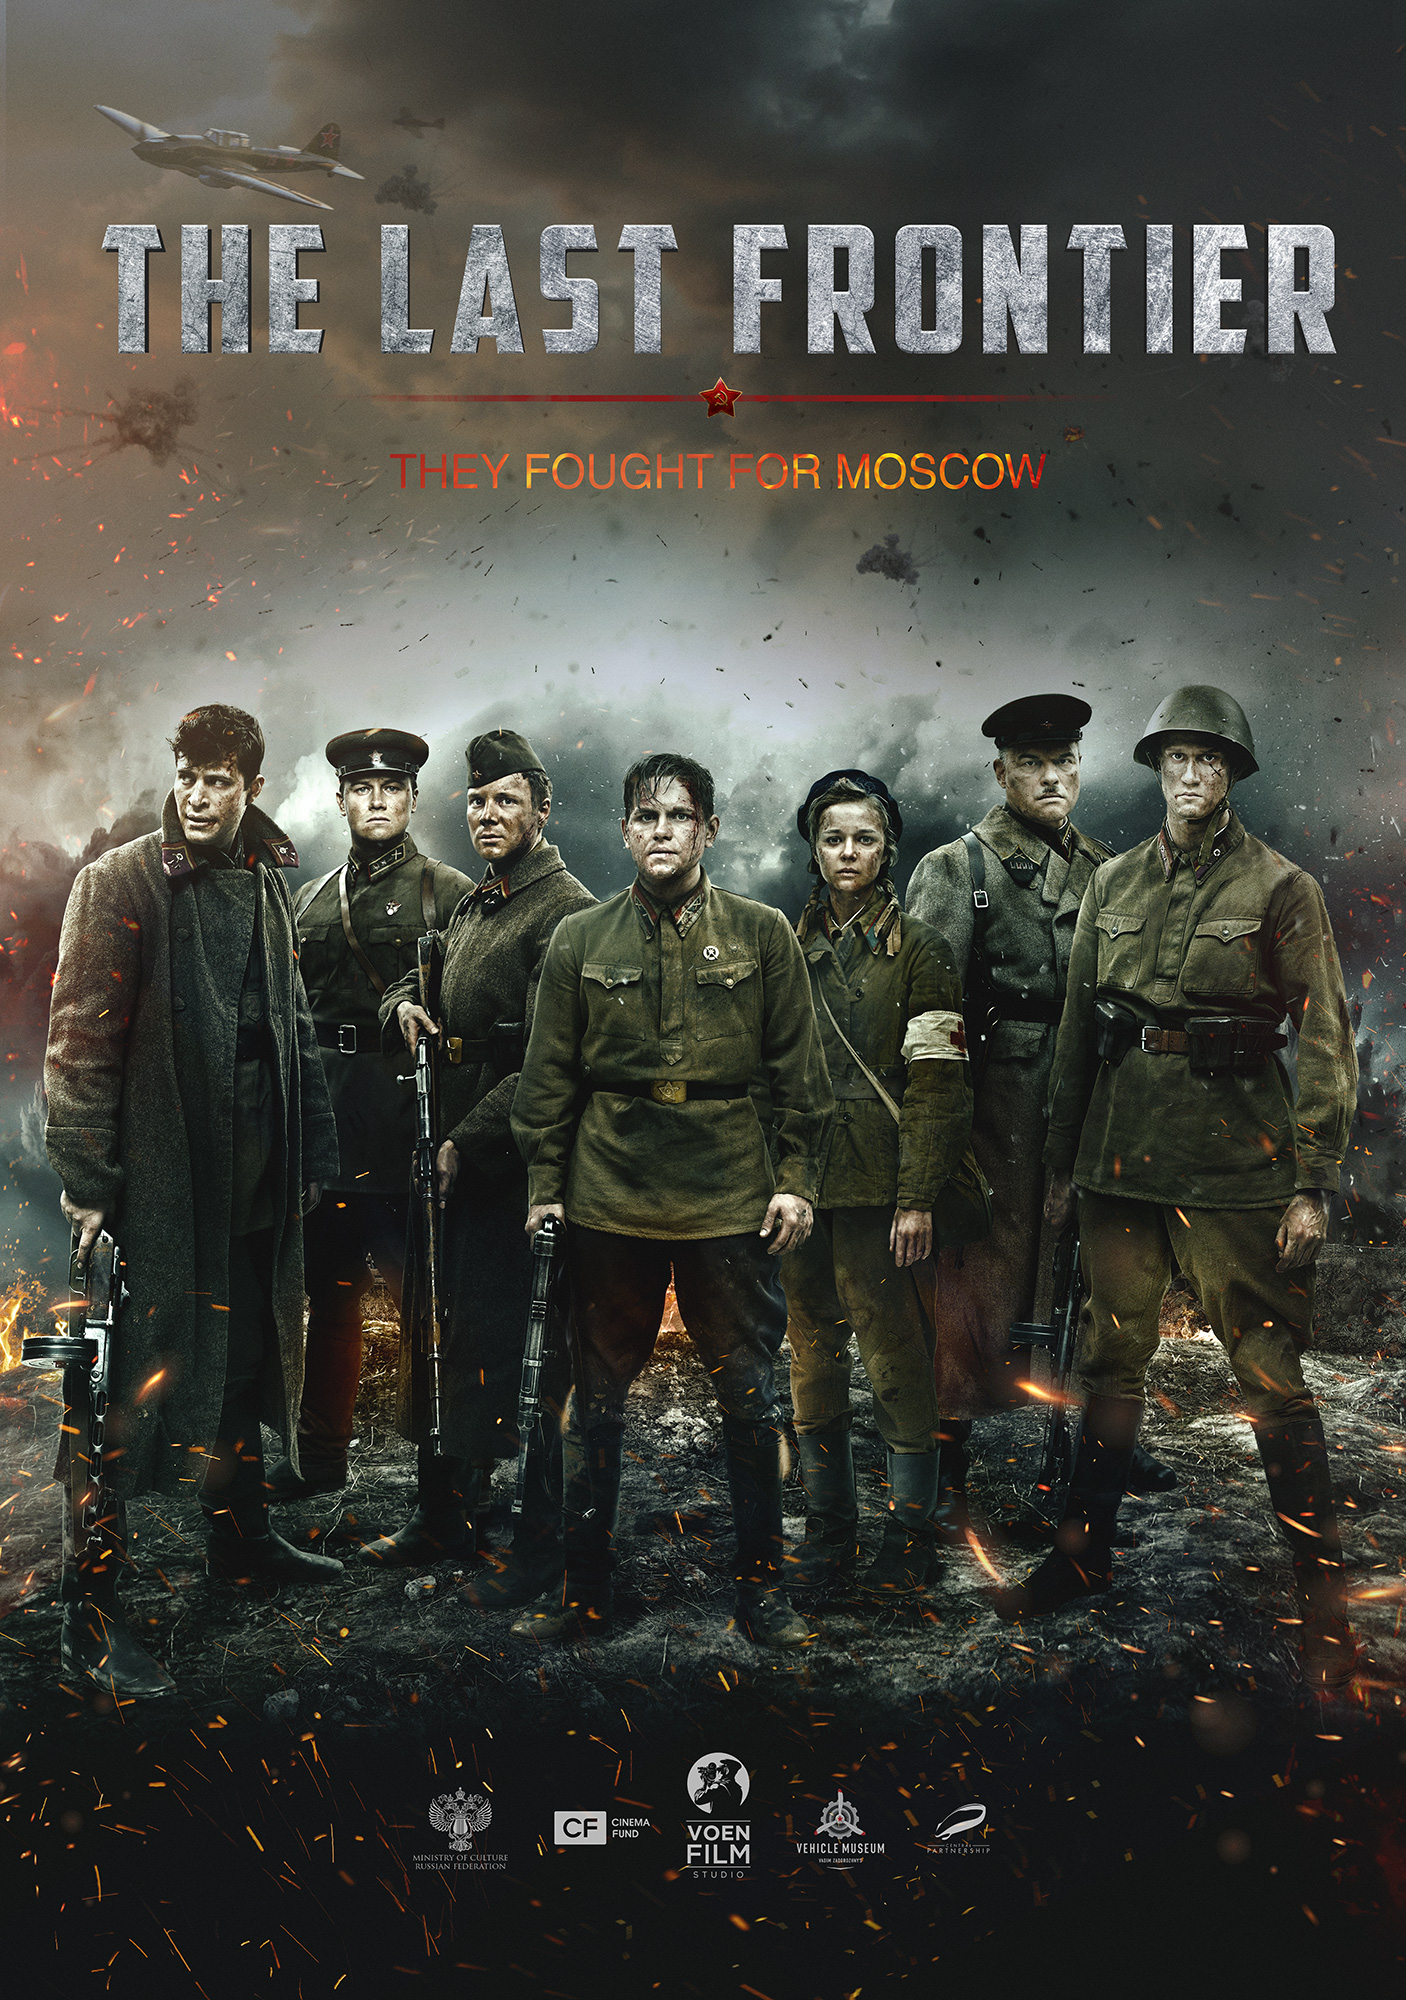 Nonton film The Last Frontier layarkaca21 indoxx1 ganool online streaming terbaru